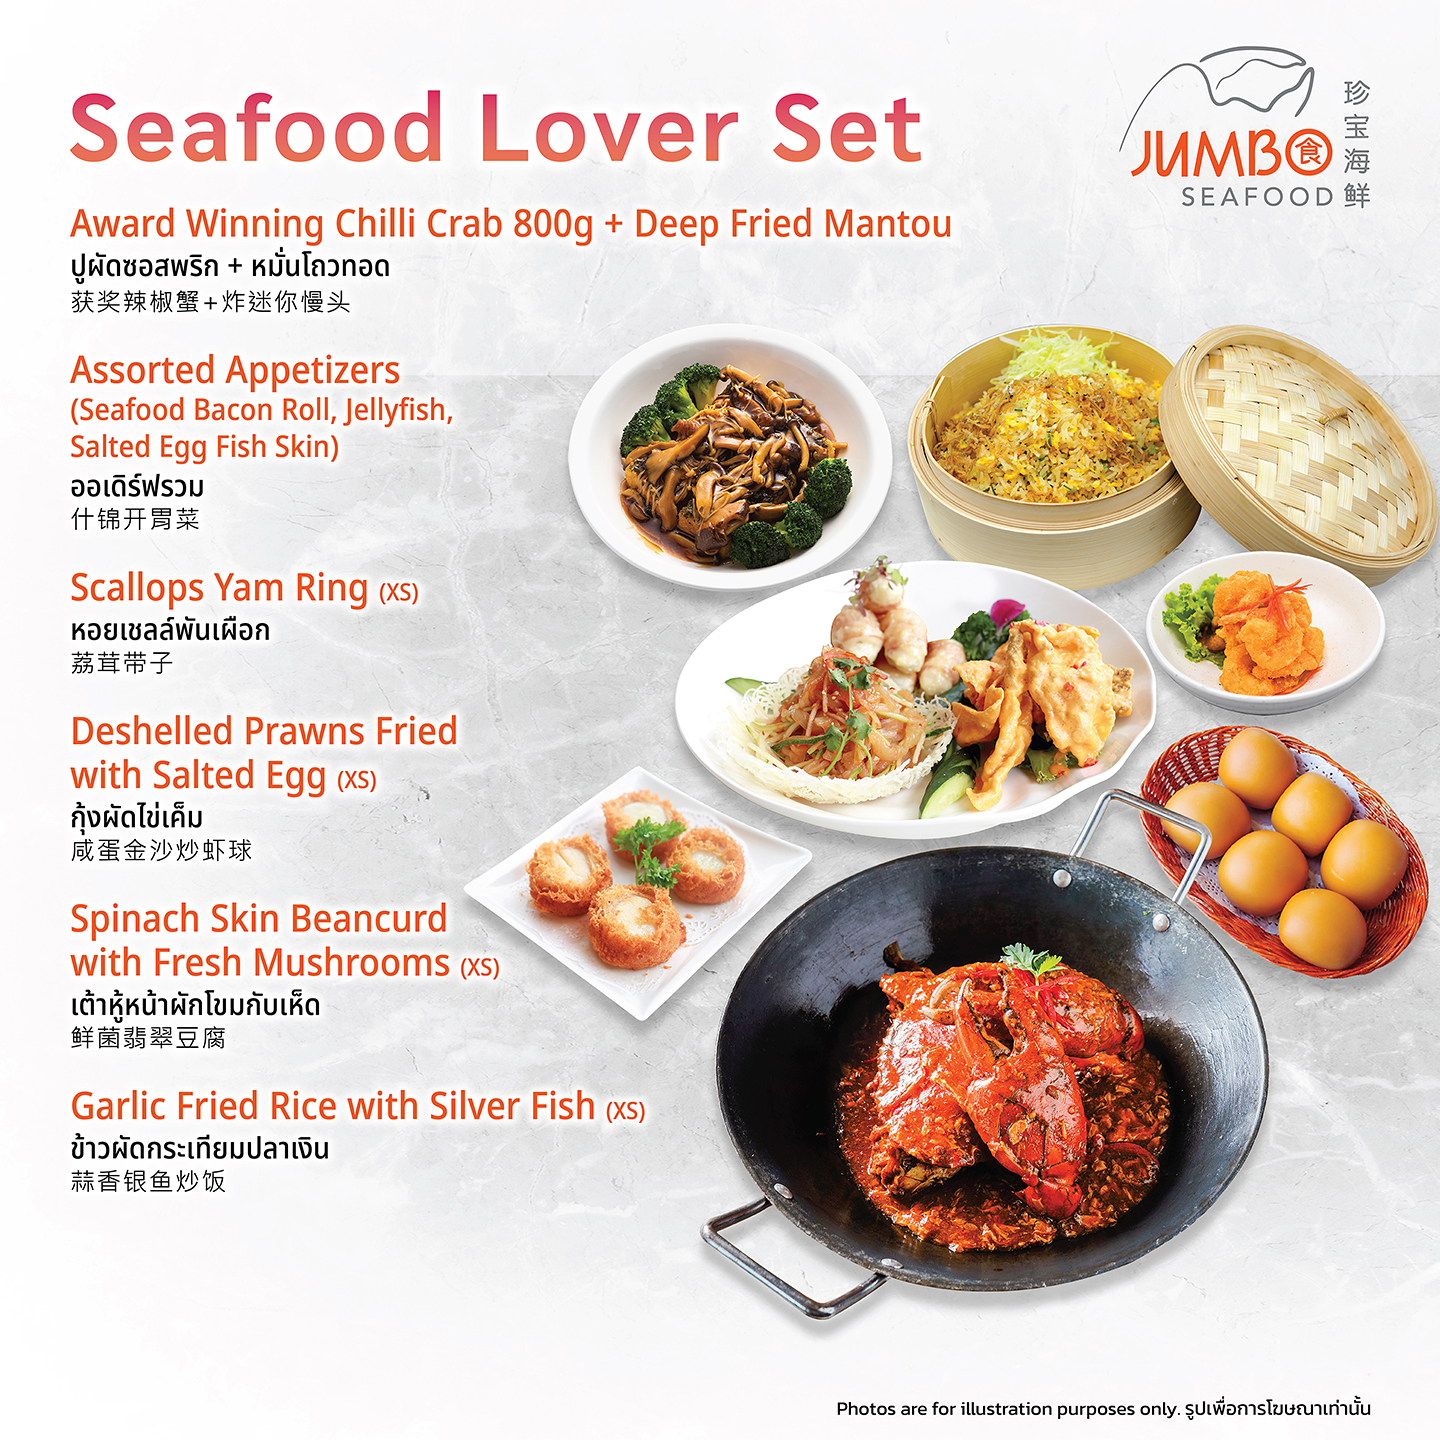 曼谷暹羅天地 & 暹羅百麗宮珍寶海鮮（Jumbo Seafood）體驗